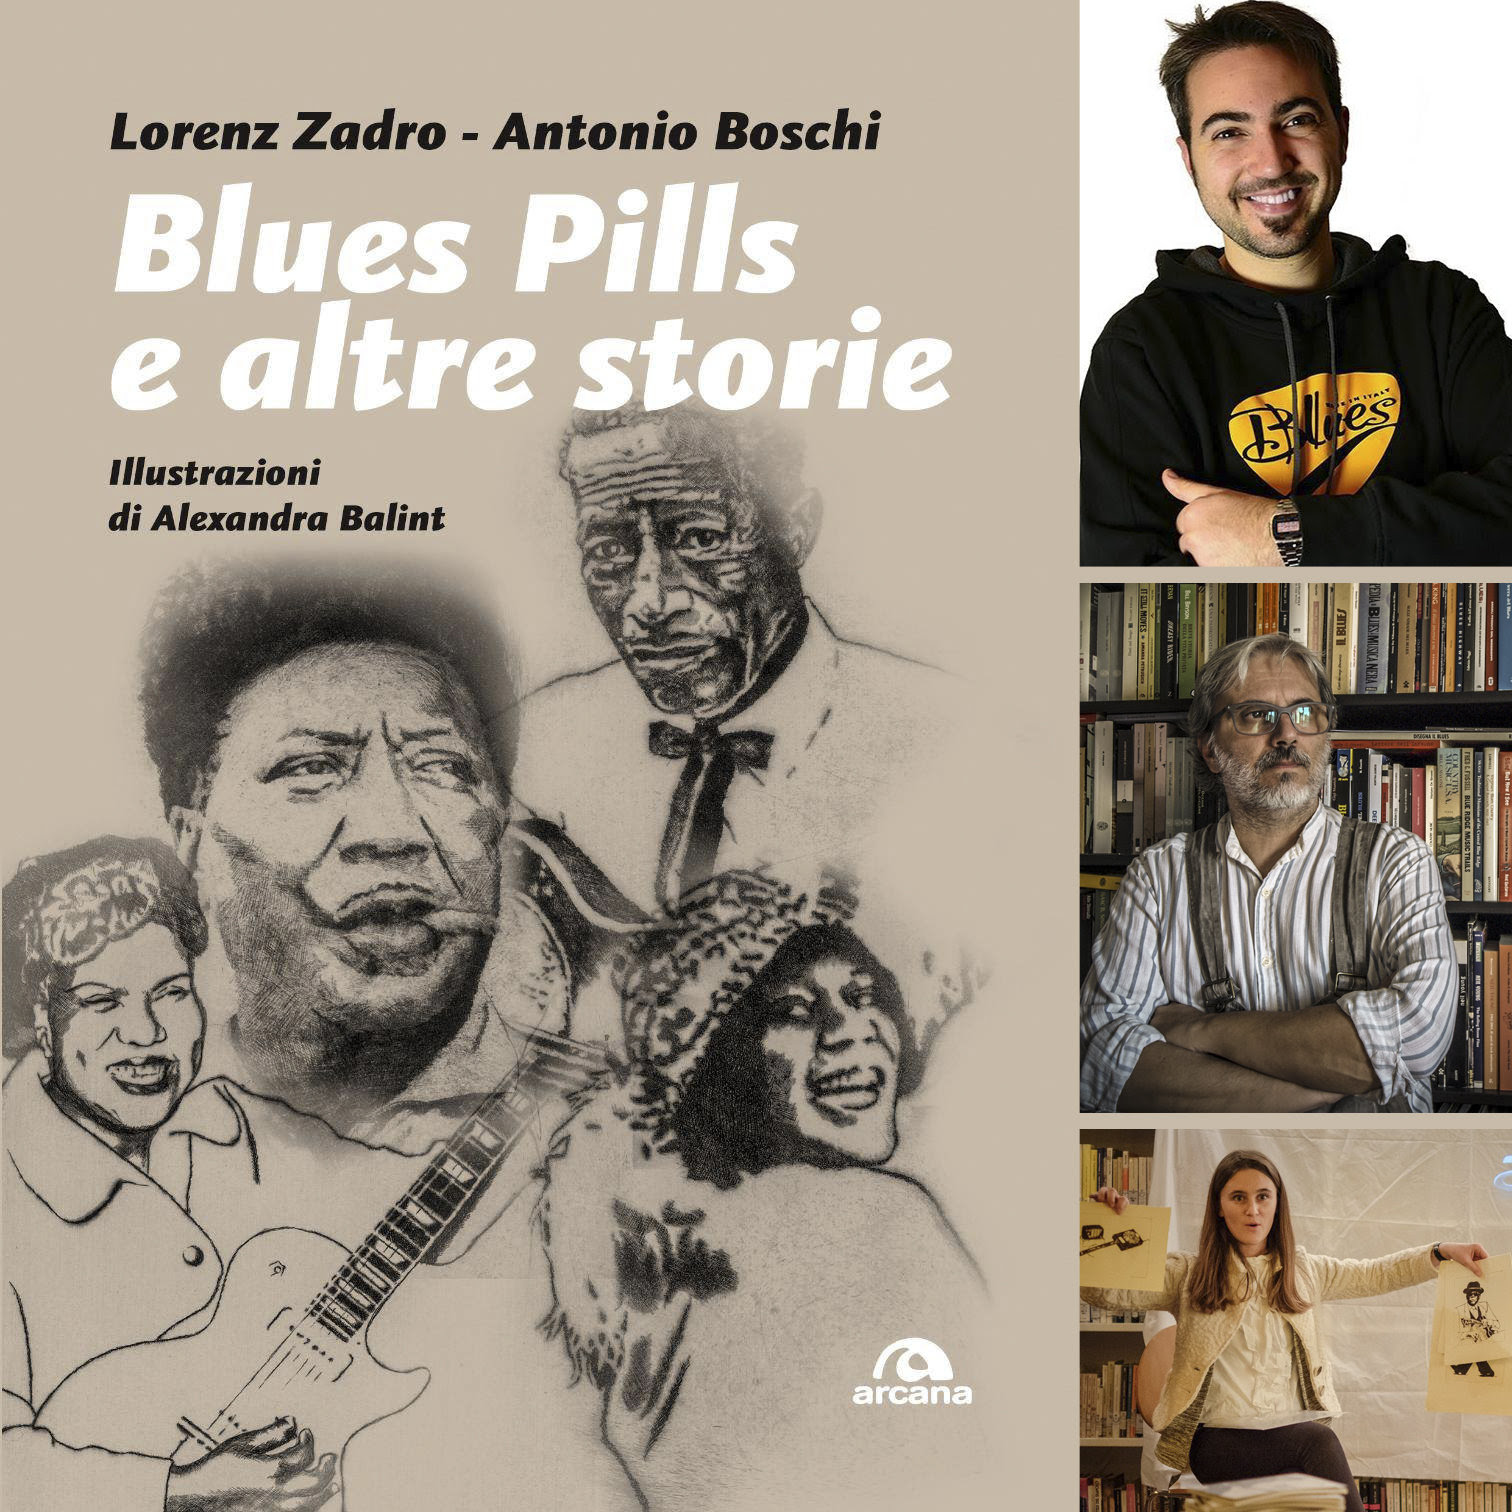 ‘Blues Pills e altre storie’, in libreria il nuovo libro di Lorenz Zadro e Antonio Boschi